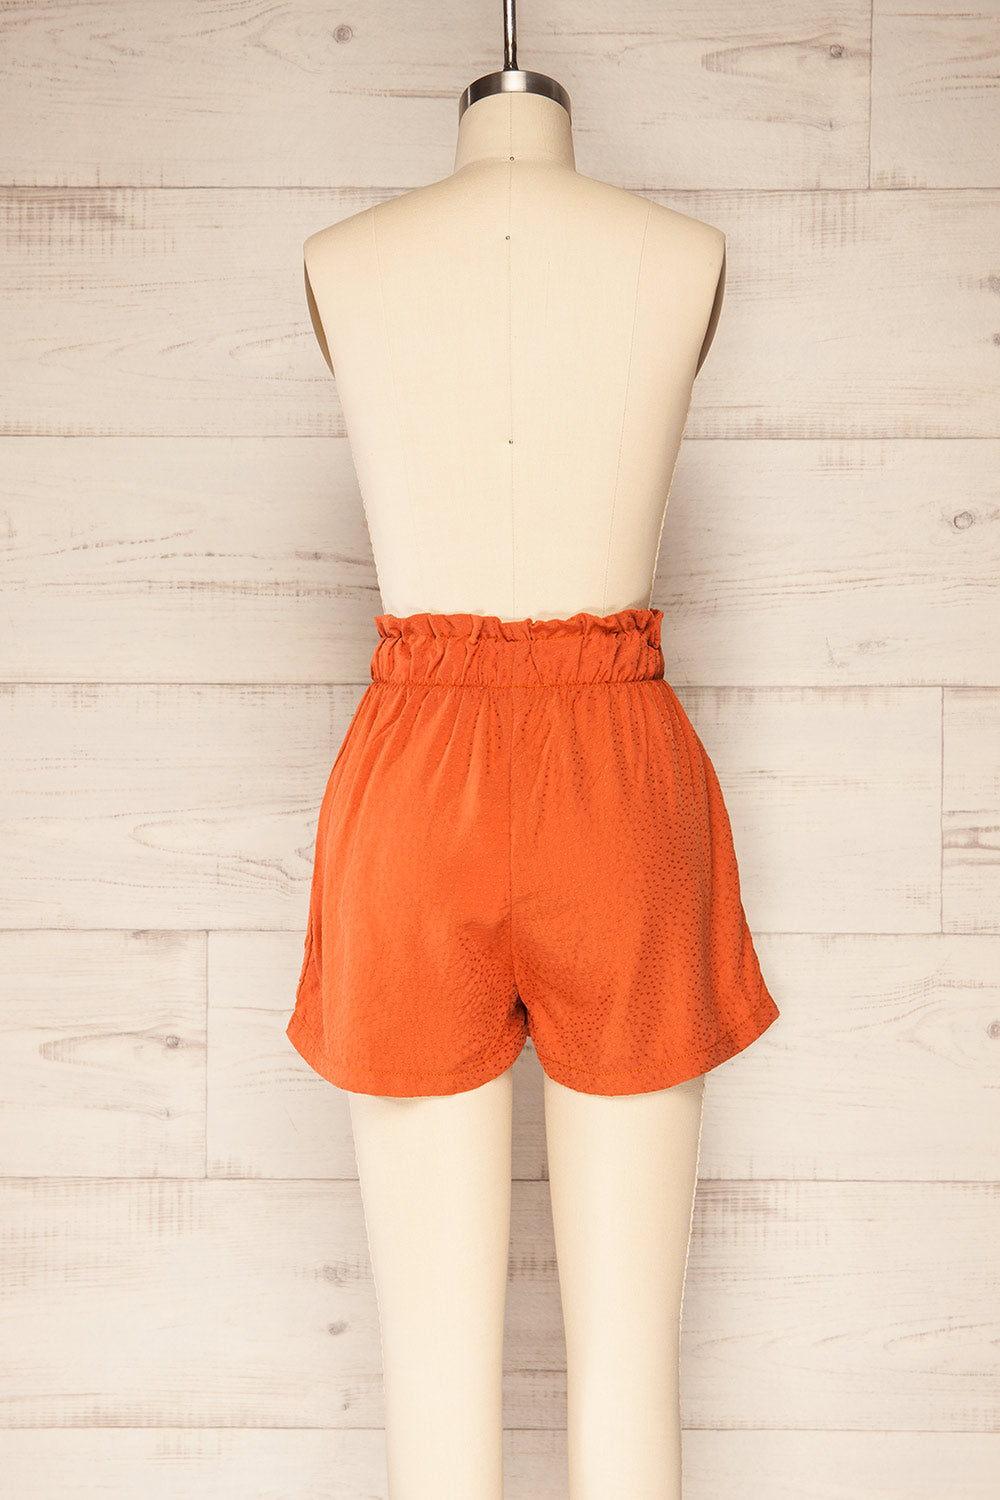 Gysele Orange High-Waisted Shorts with Pockets | La petite garçonne back view 